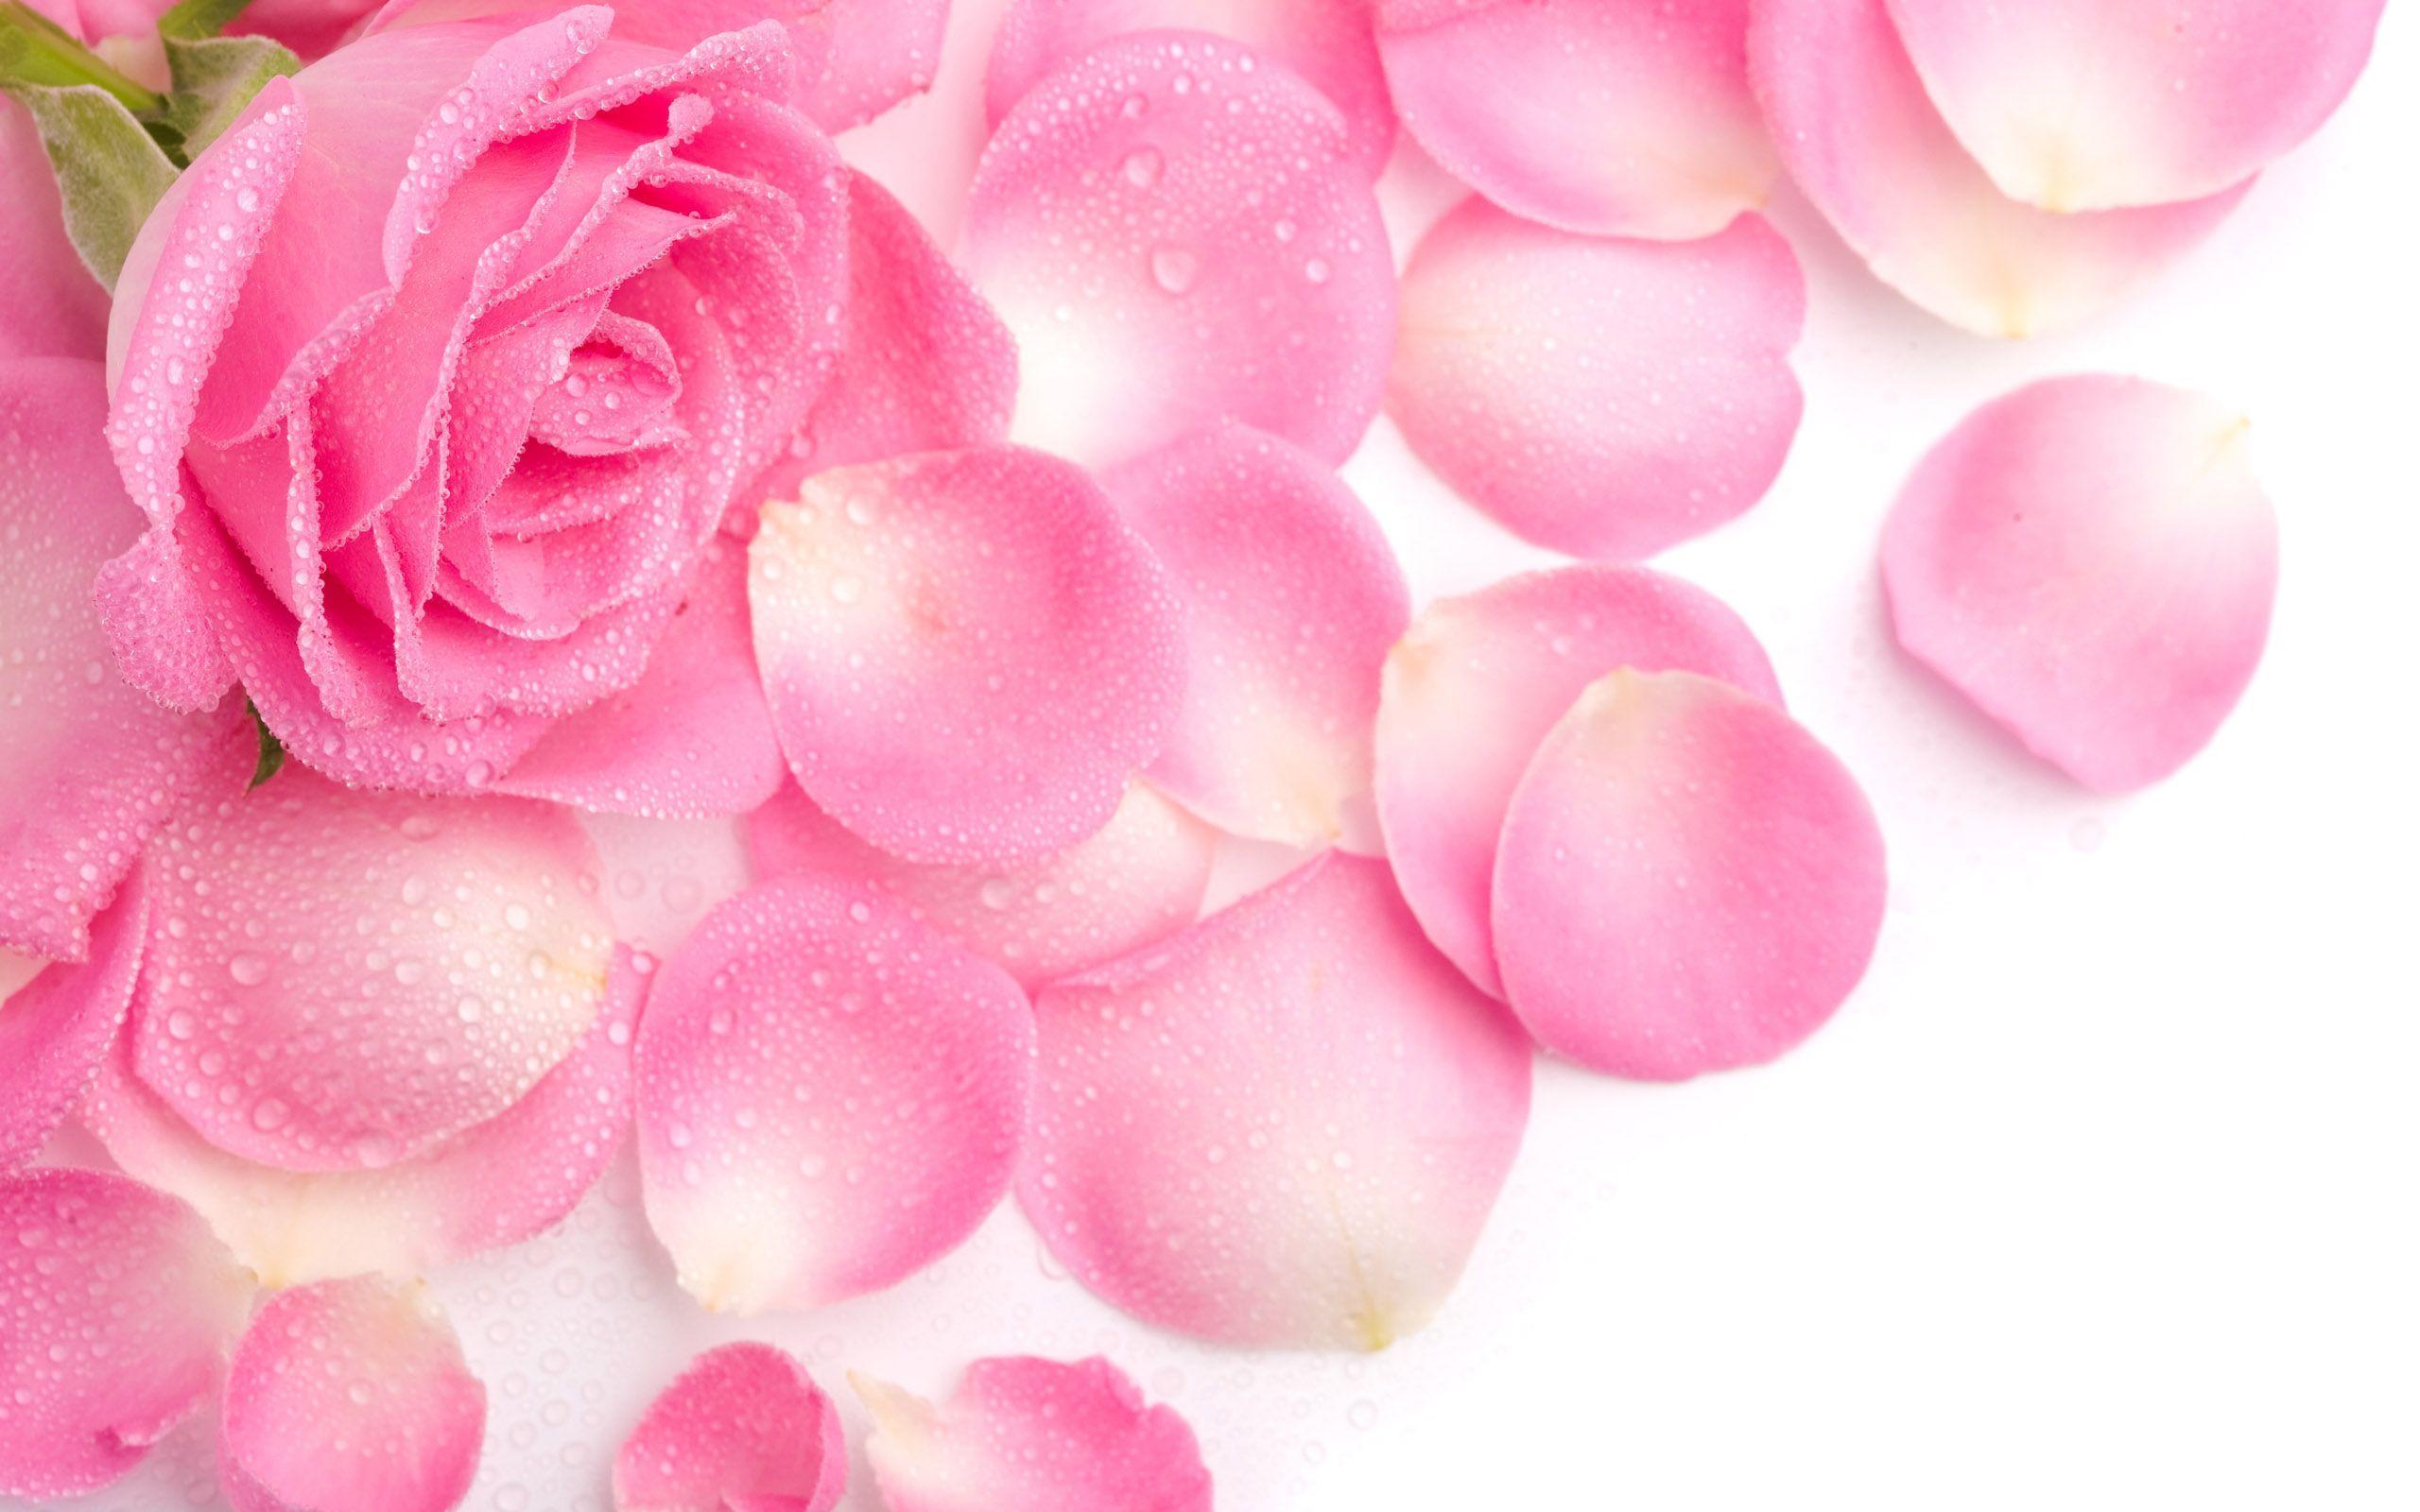 Rose Flower Wallpaper. Free Desk Wallpaper